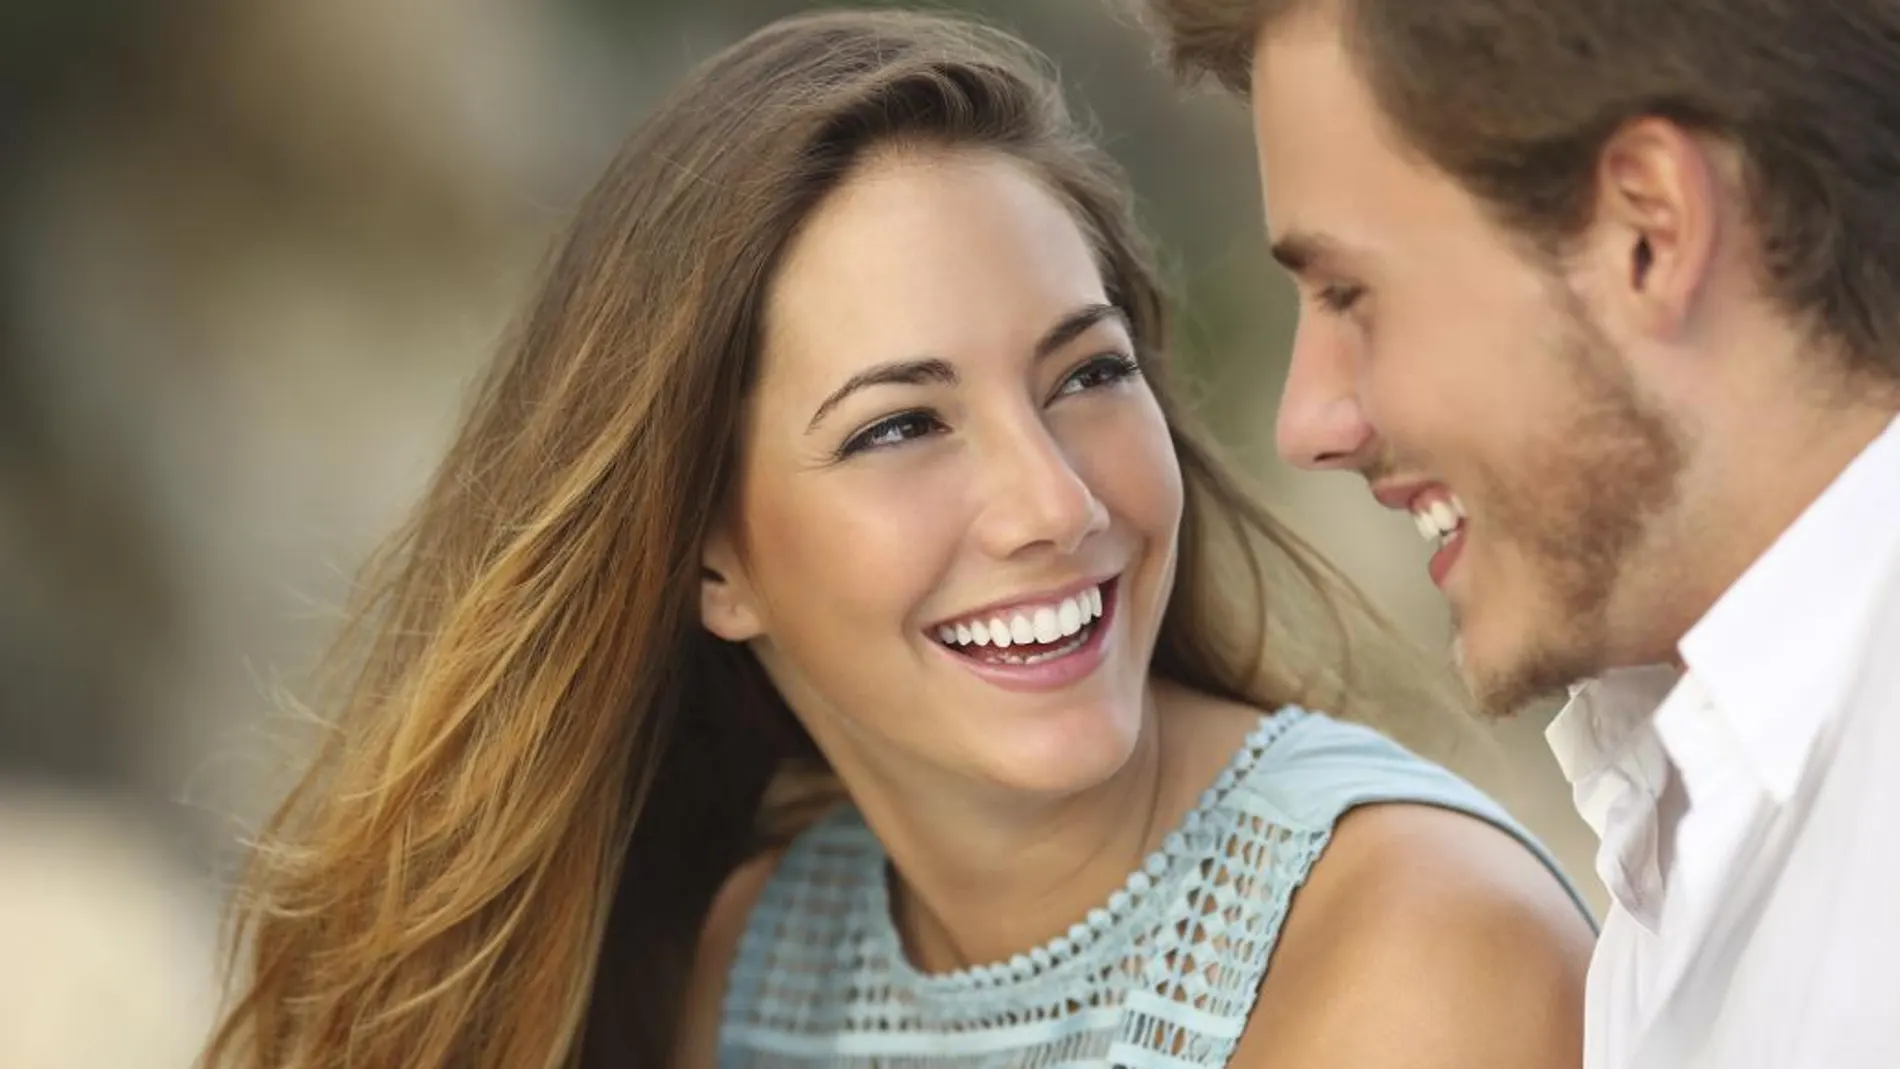 Las parejas que ríen juntas son mucho más felices